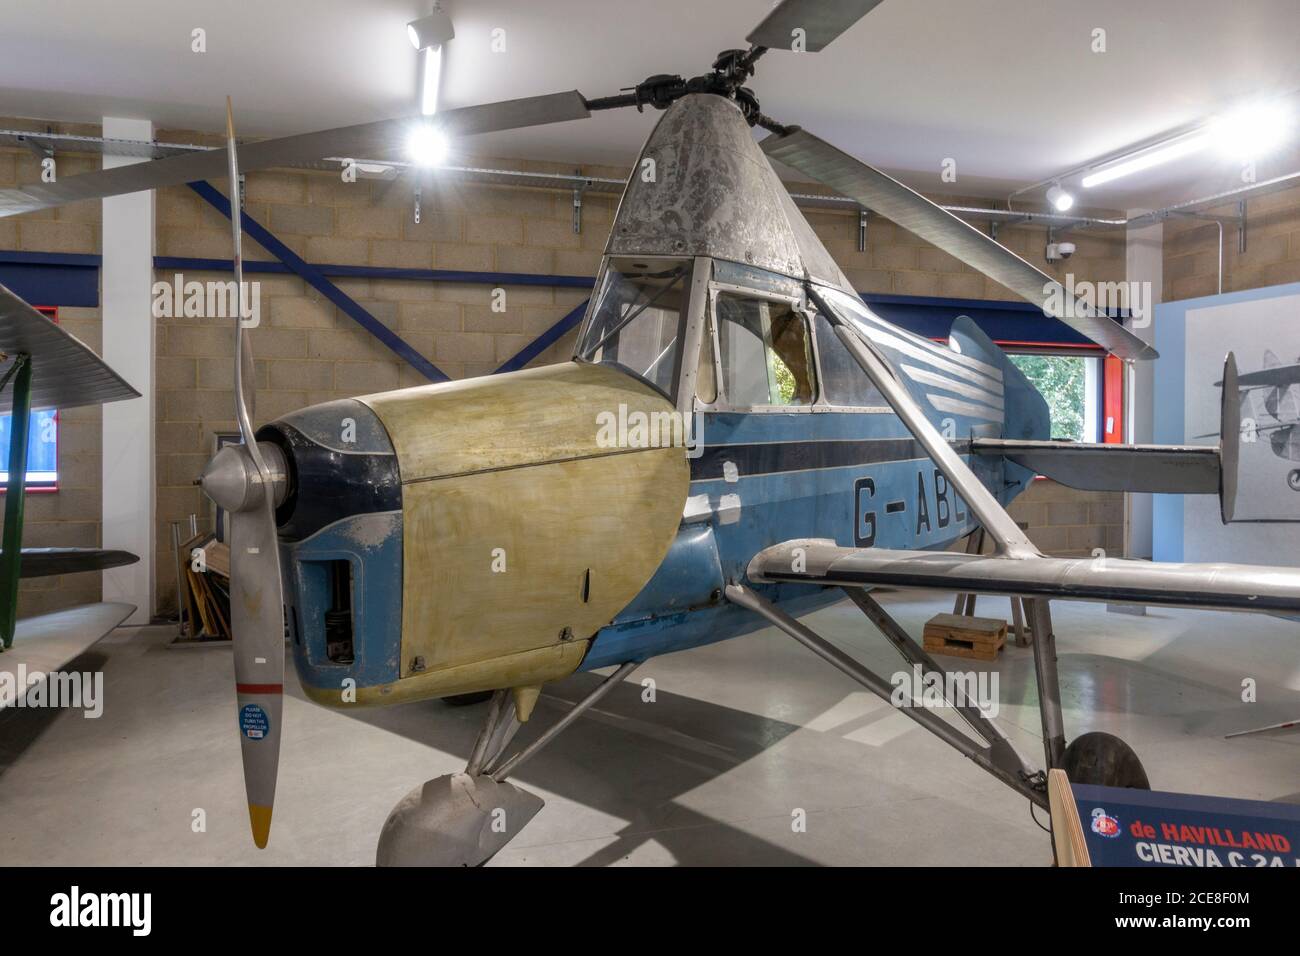 Un avion de havilland Cierva C.24 Autogiro autogyro exposé au musée de Havilland, Londres Colney, Royaume-Uni Banque D'Images